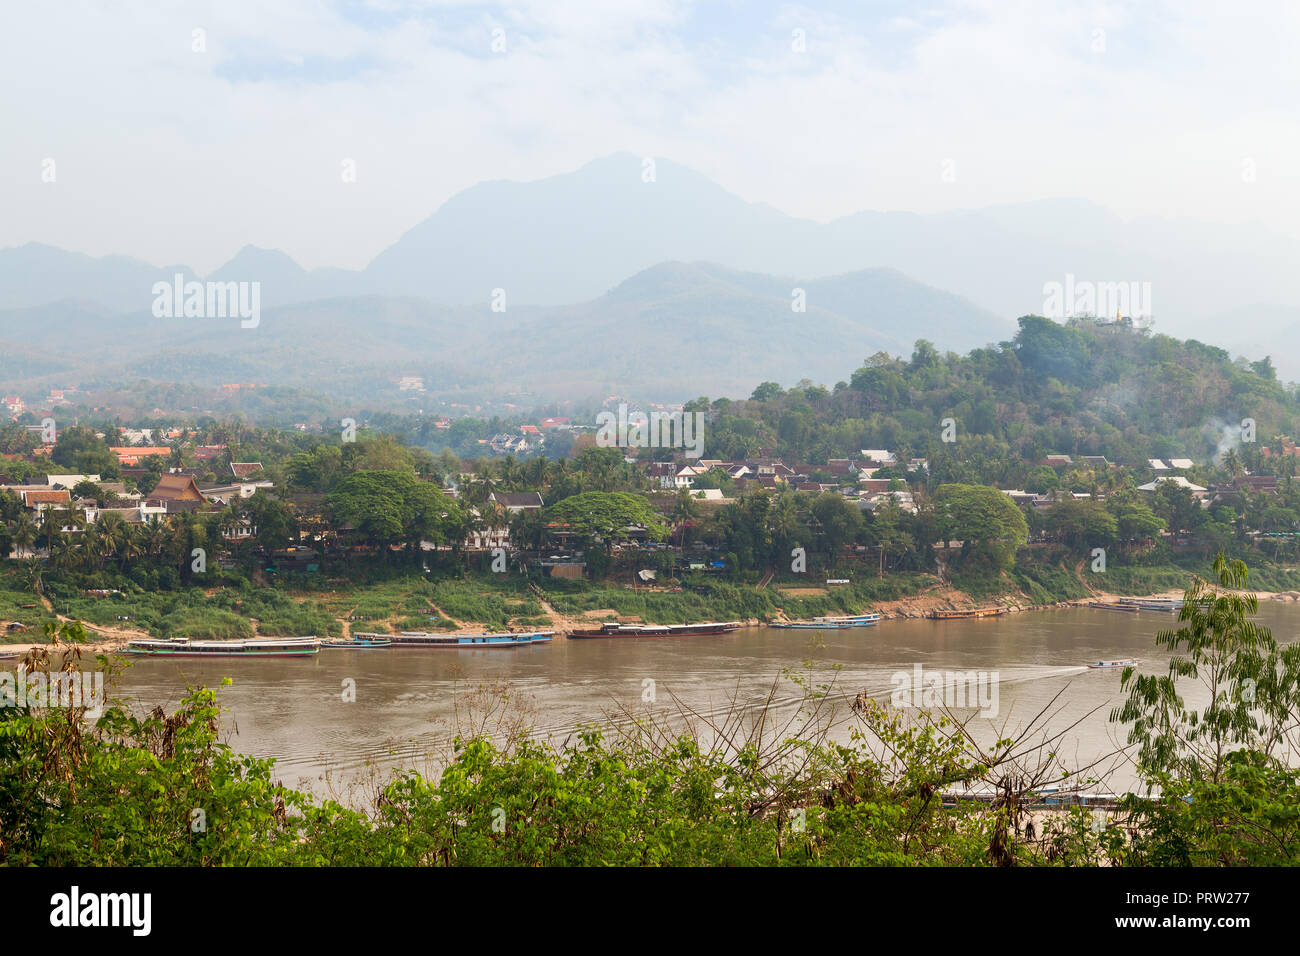 Bateaux amarrés sur le fleuve Mékong, ville de Luang Prabang, le Mont Phousi (Phou Si, Phusi, Phu Si) et les montagnes en arrière-plan à Luang Prabang, Laos. Banque D'Images